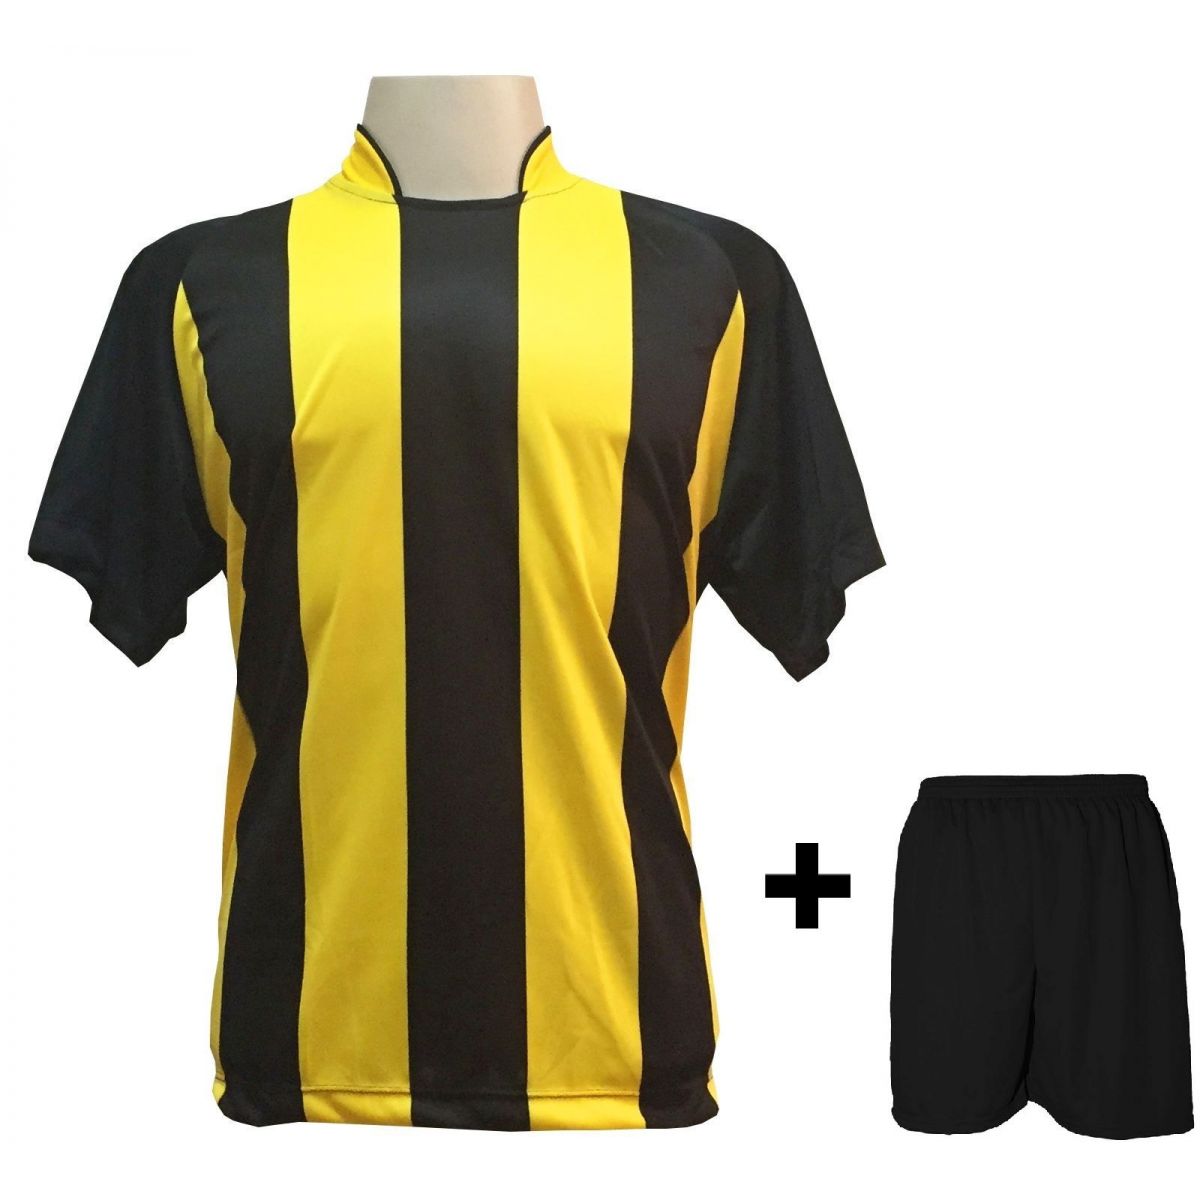 Uniforme Esportivo com 20 camisas modelo Milan Preto/Amarelo + 20 calções modelo Madrid Preto + Brindes